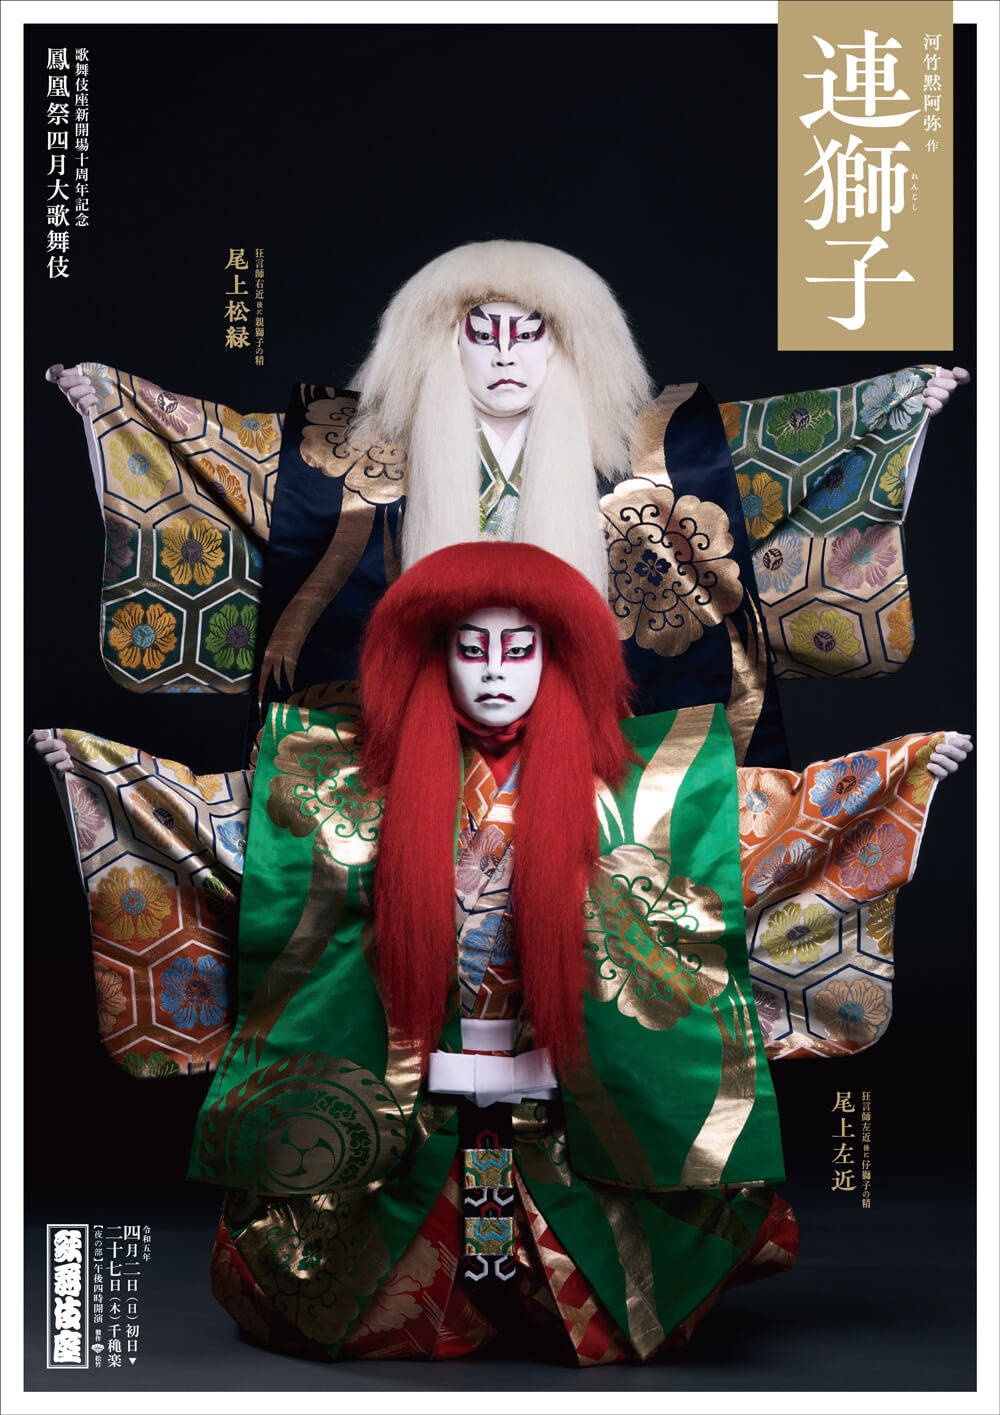 鳳凰祭四月大歌舞伎 夜の部『与話情浮名横櫛』『連獅子』